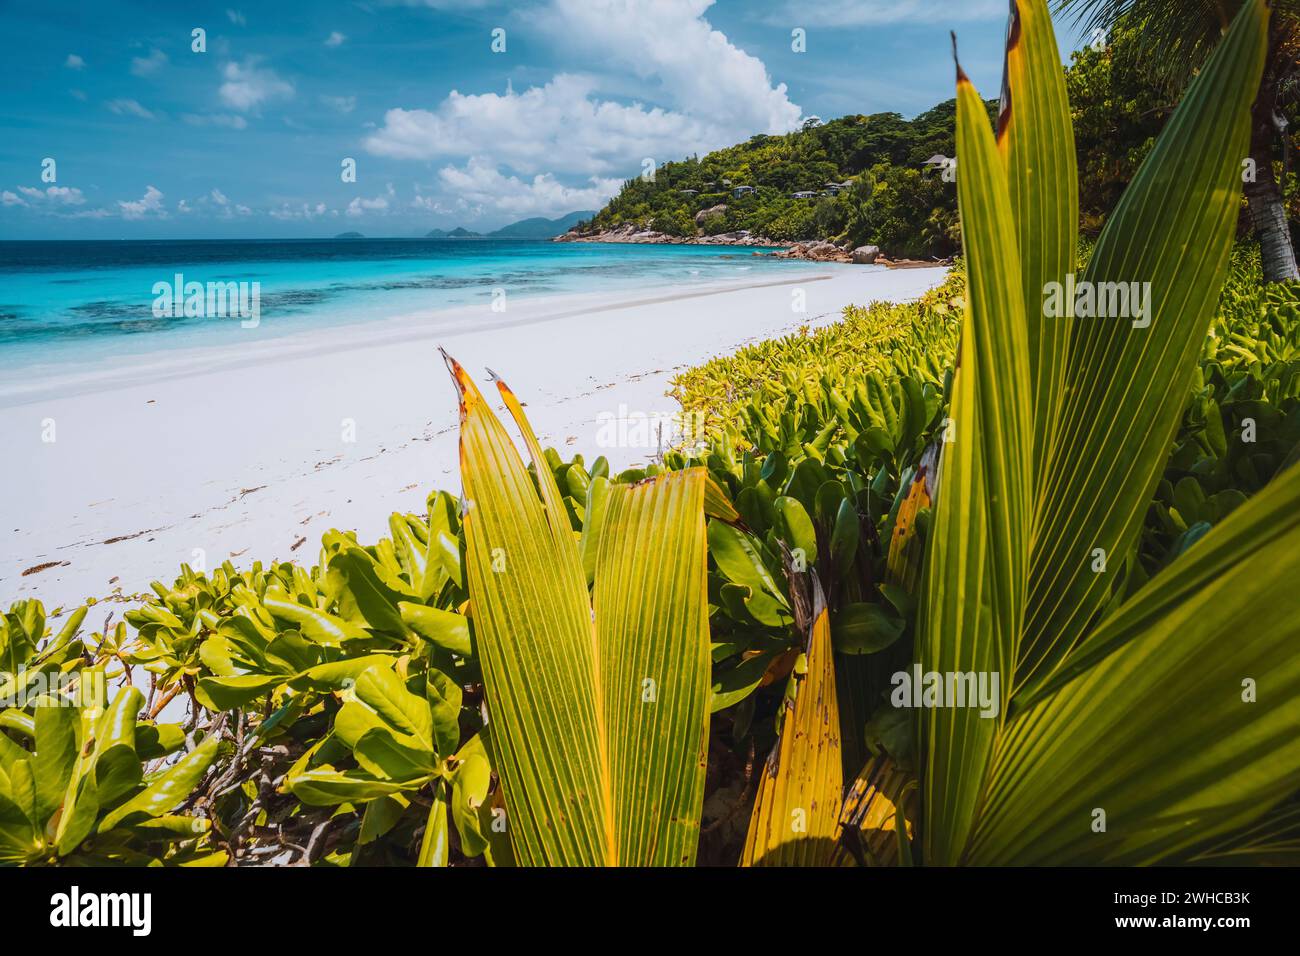 Verde palma tropicale lascia il fogliame di fronte a una splendida spiaggia esotica con laguna turchese sull'oceano nelle giornate di vacanza soleggiate. Nuvole bianche nel cielo blu. Foto Stock